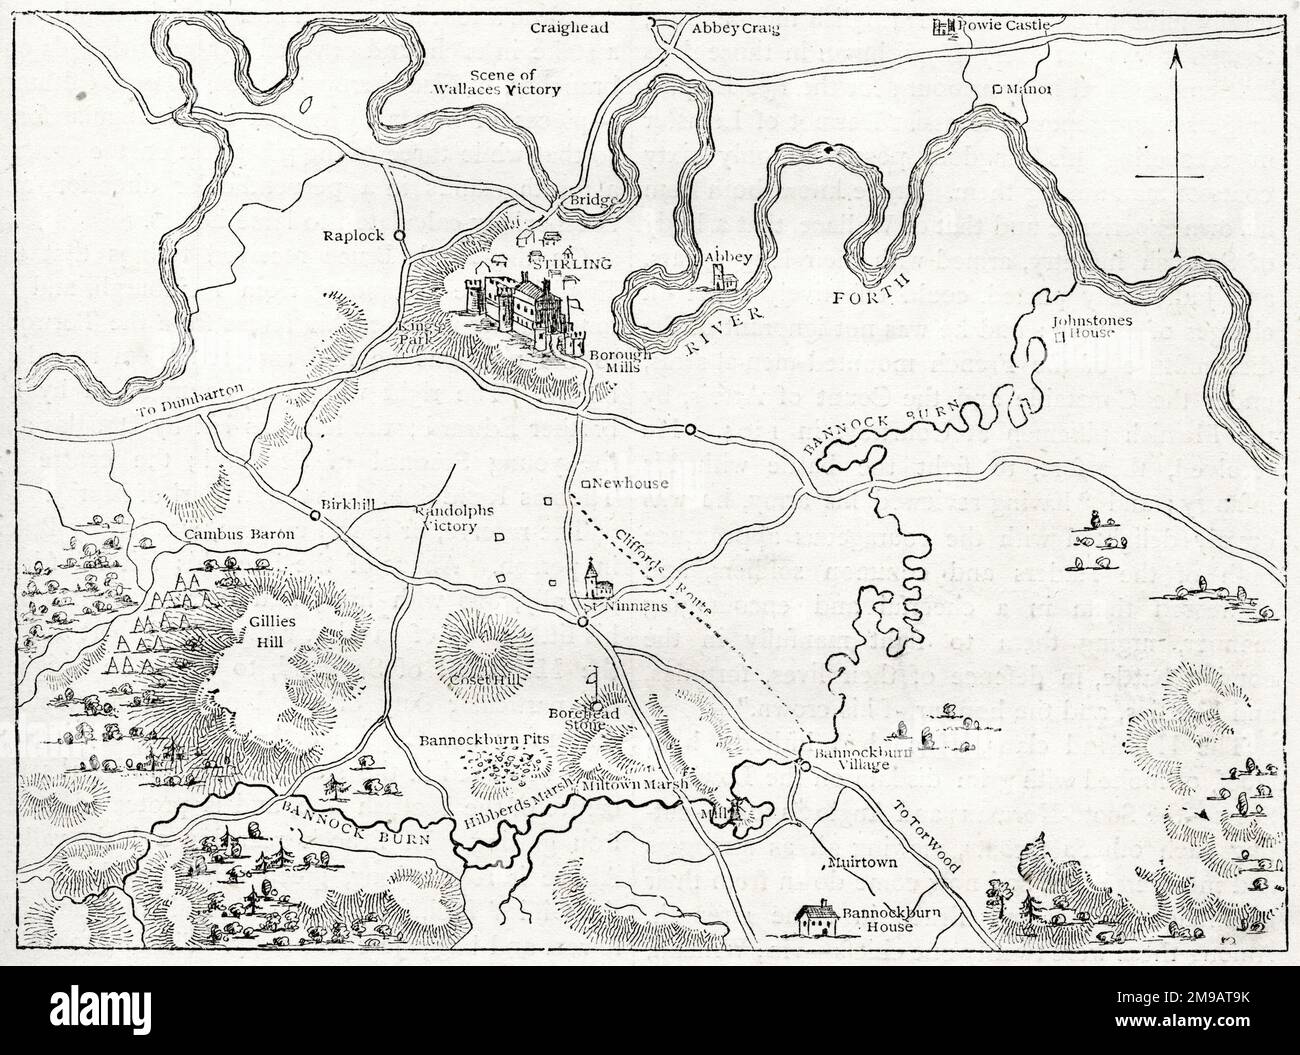 Plan des Schlachtfeldes von Bannockburn, Schottland, 23-24. Juni 1314, Teil des Ersten Unabhängigkeitskrieges Schottlands. Stockfoto